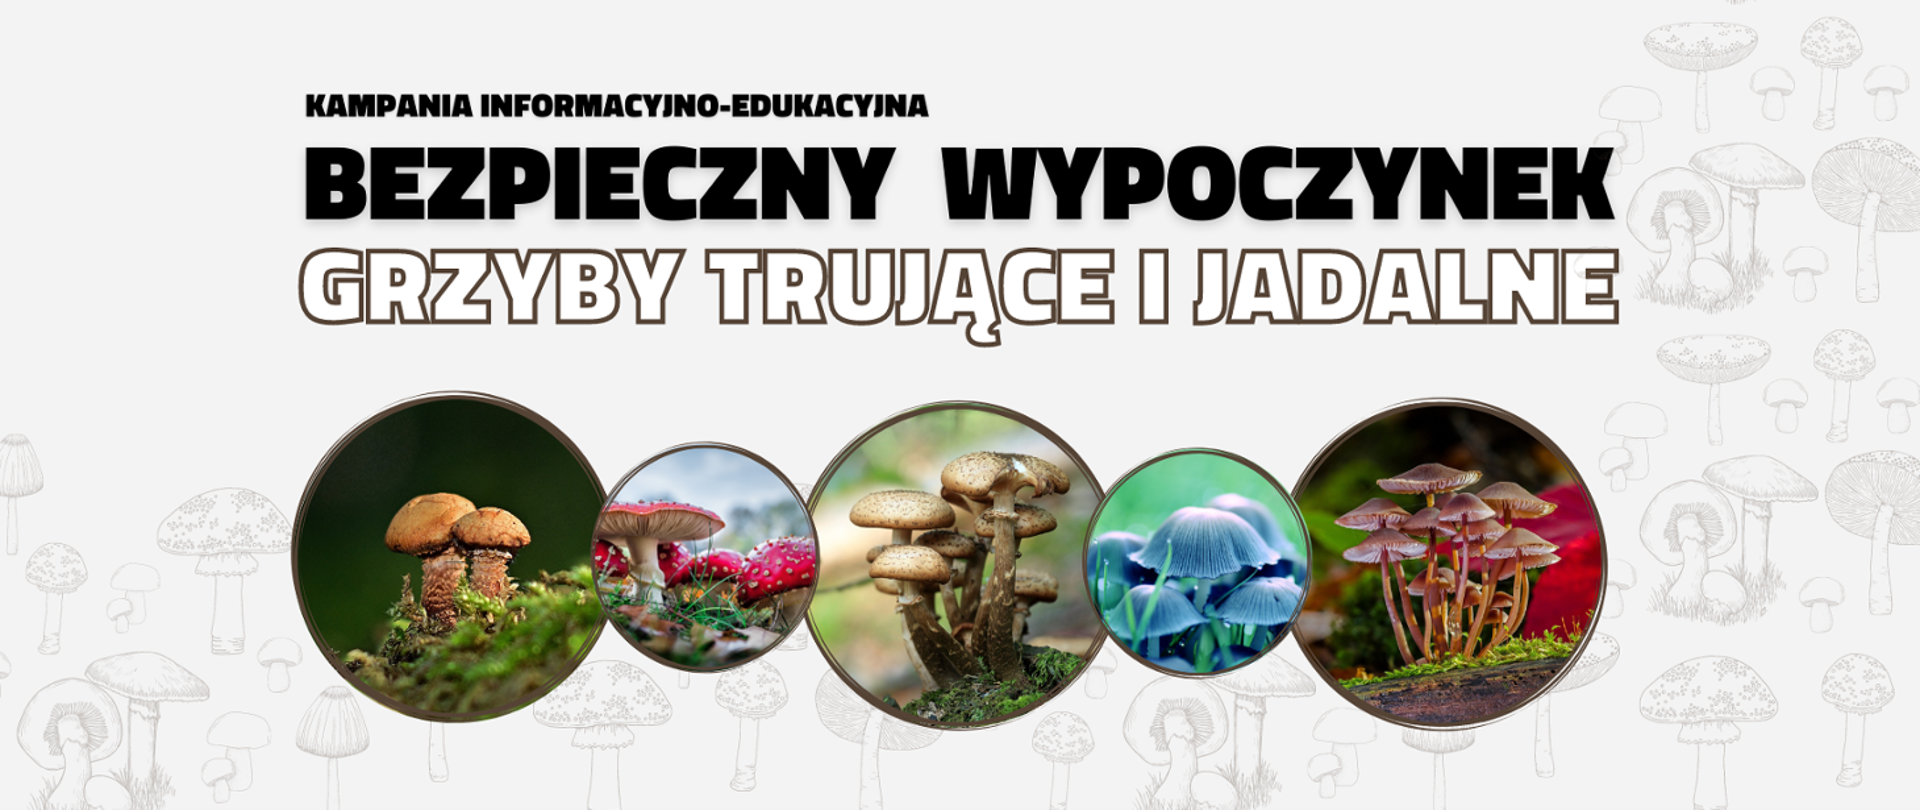 Bezpieczny wypoczynek – grzyby trujące i jadalne w Polsce